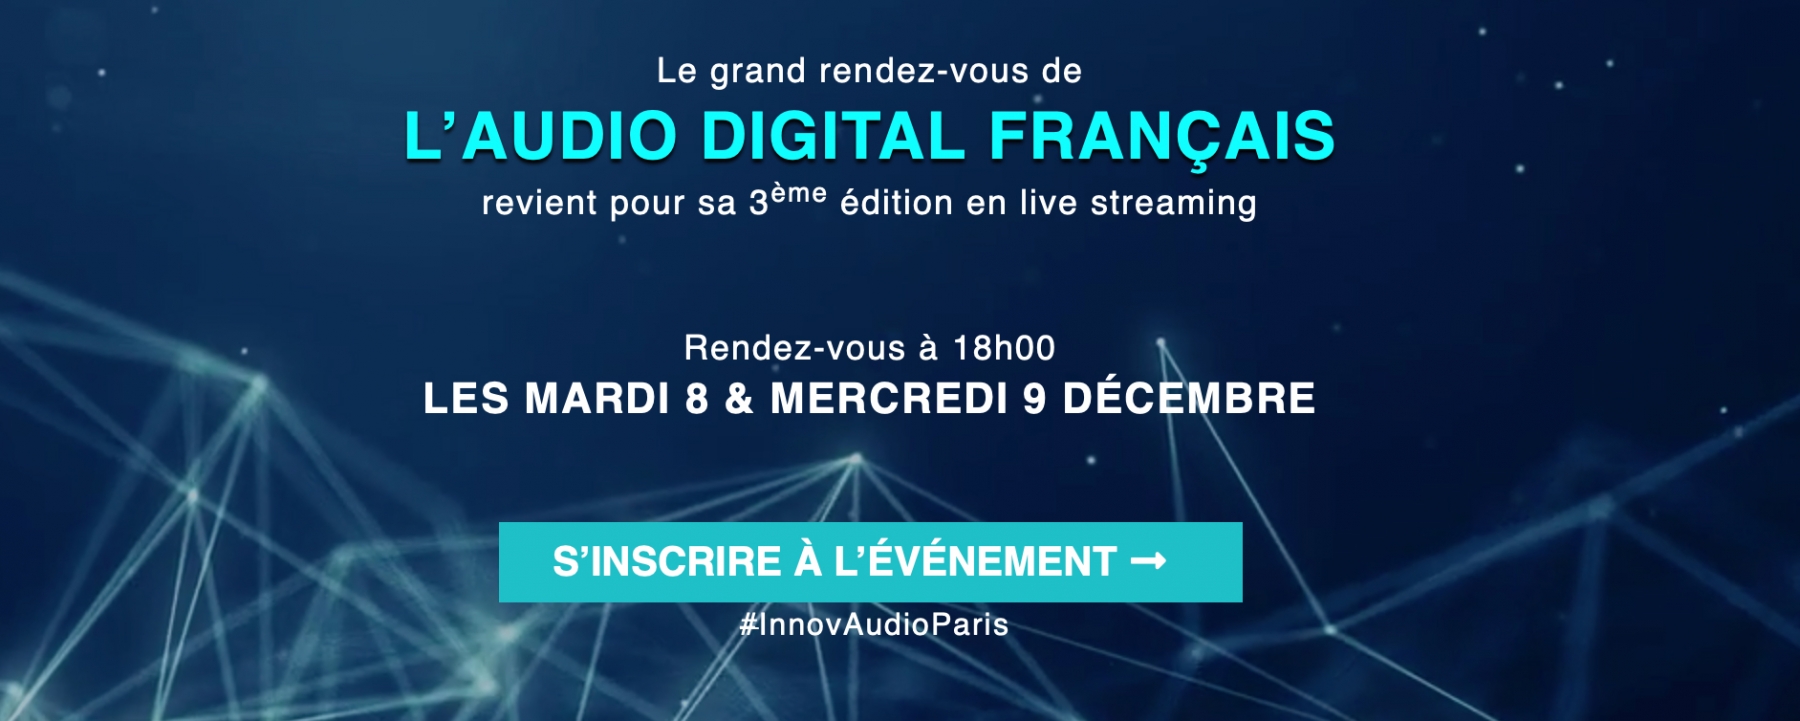 Innov'Audio Paris 2020, événement organisé par ACPM le mercredi 9 décembre 